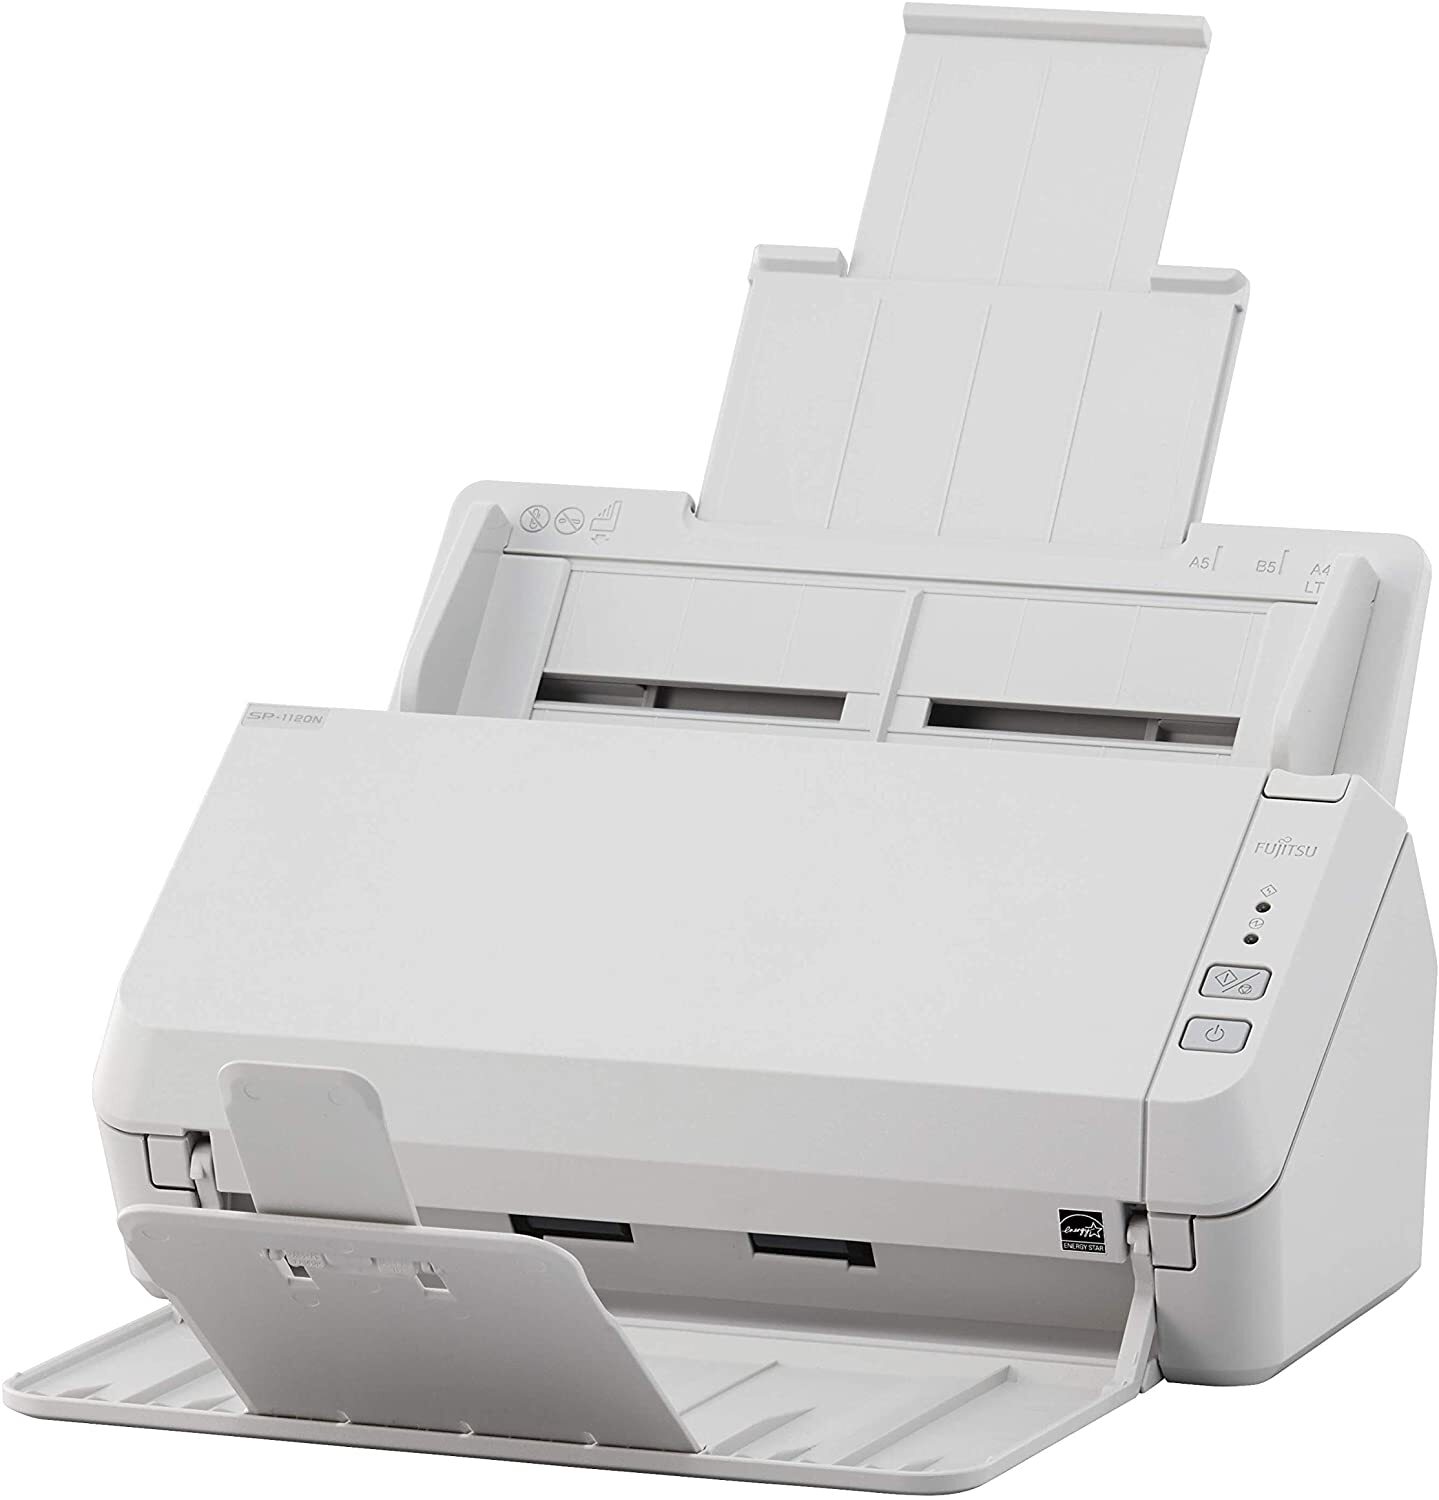  Документ-сканер A4 Fujitsu SP-1125N (PA03811-B011) фото